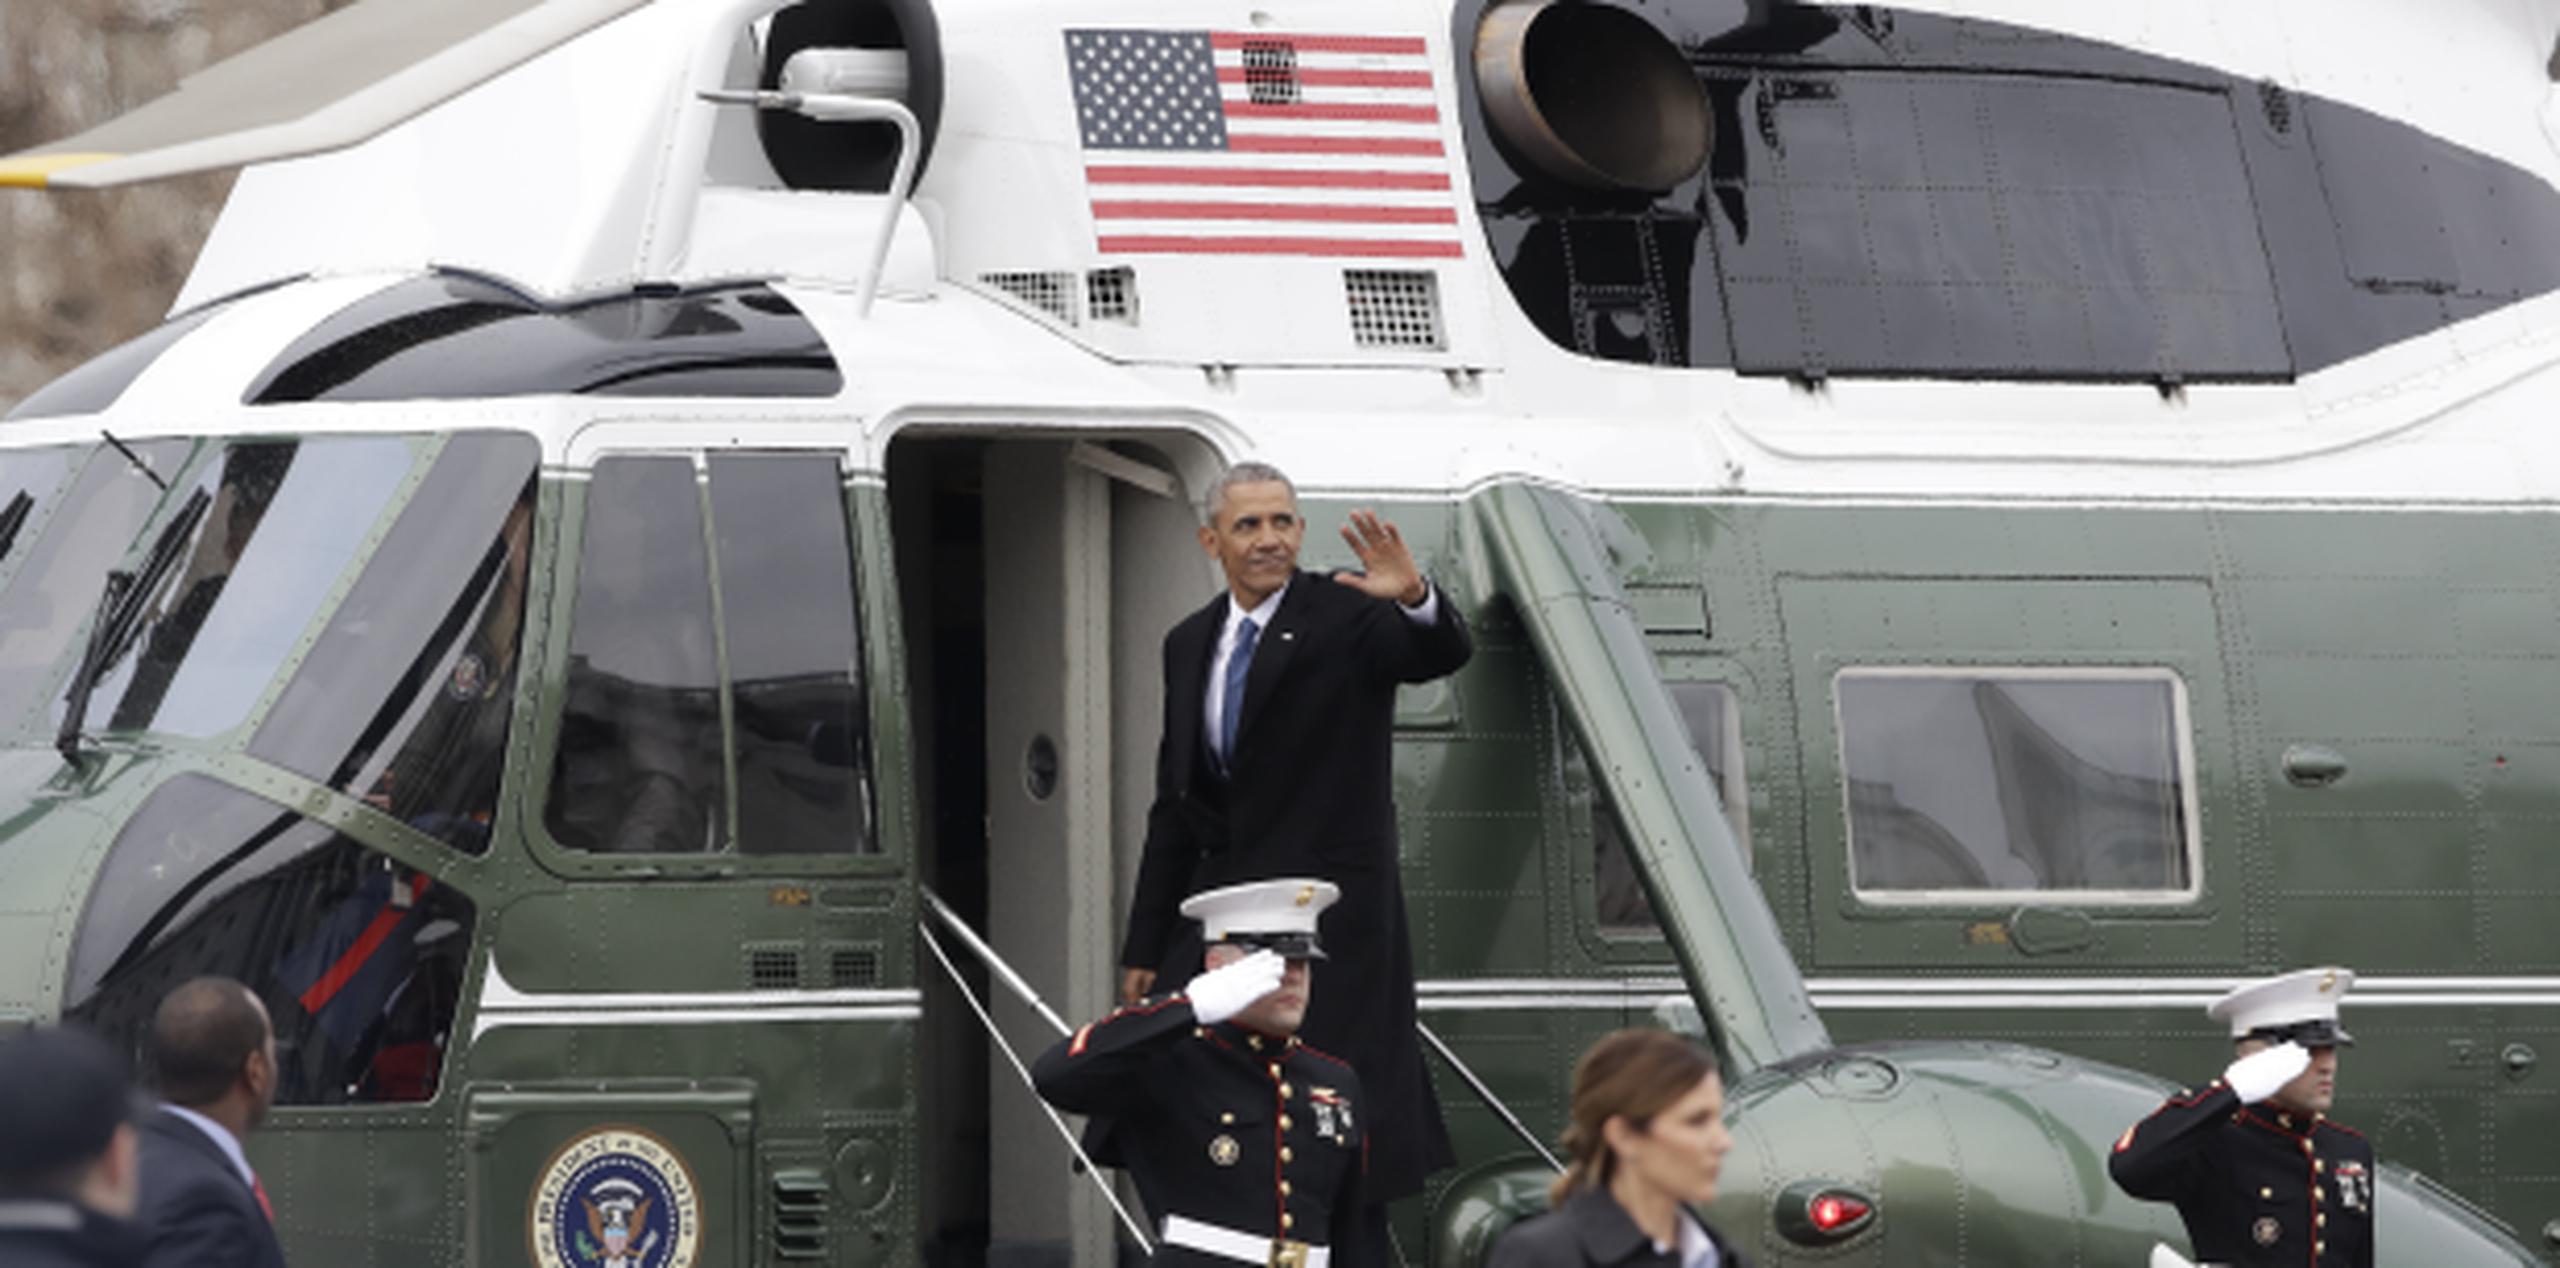 Obama se despide de los presentes antes de abordar el helicóptero presidencial. (Prensa Asociada)